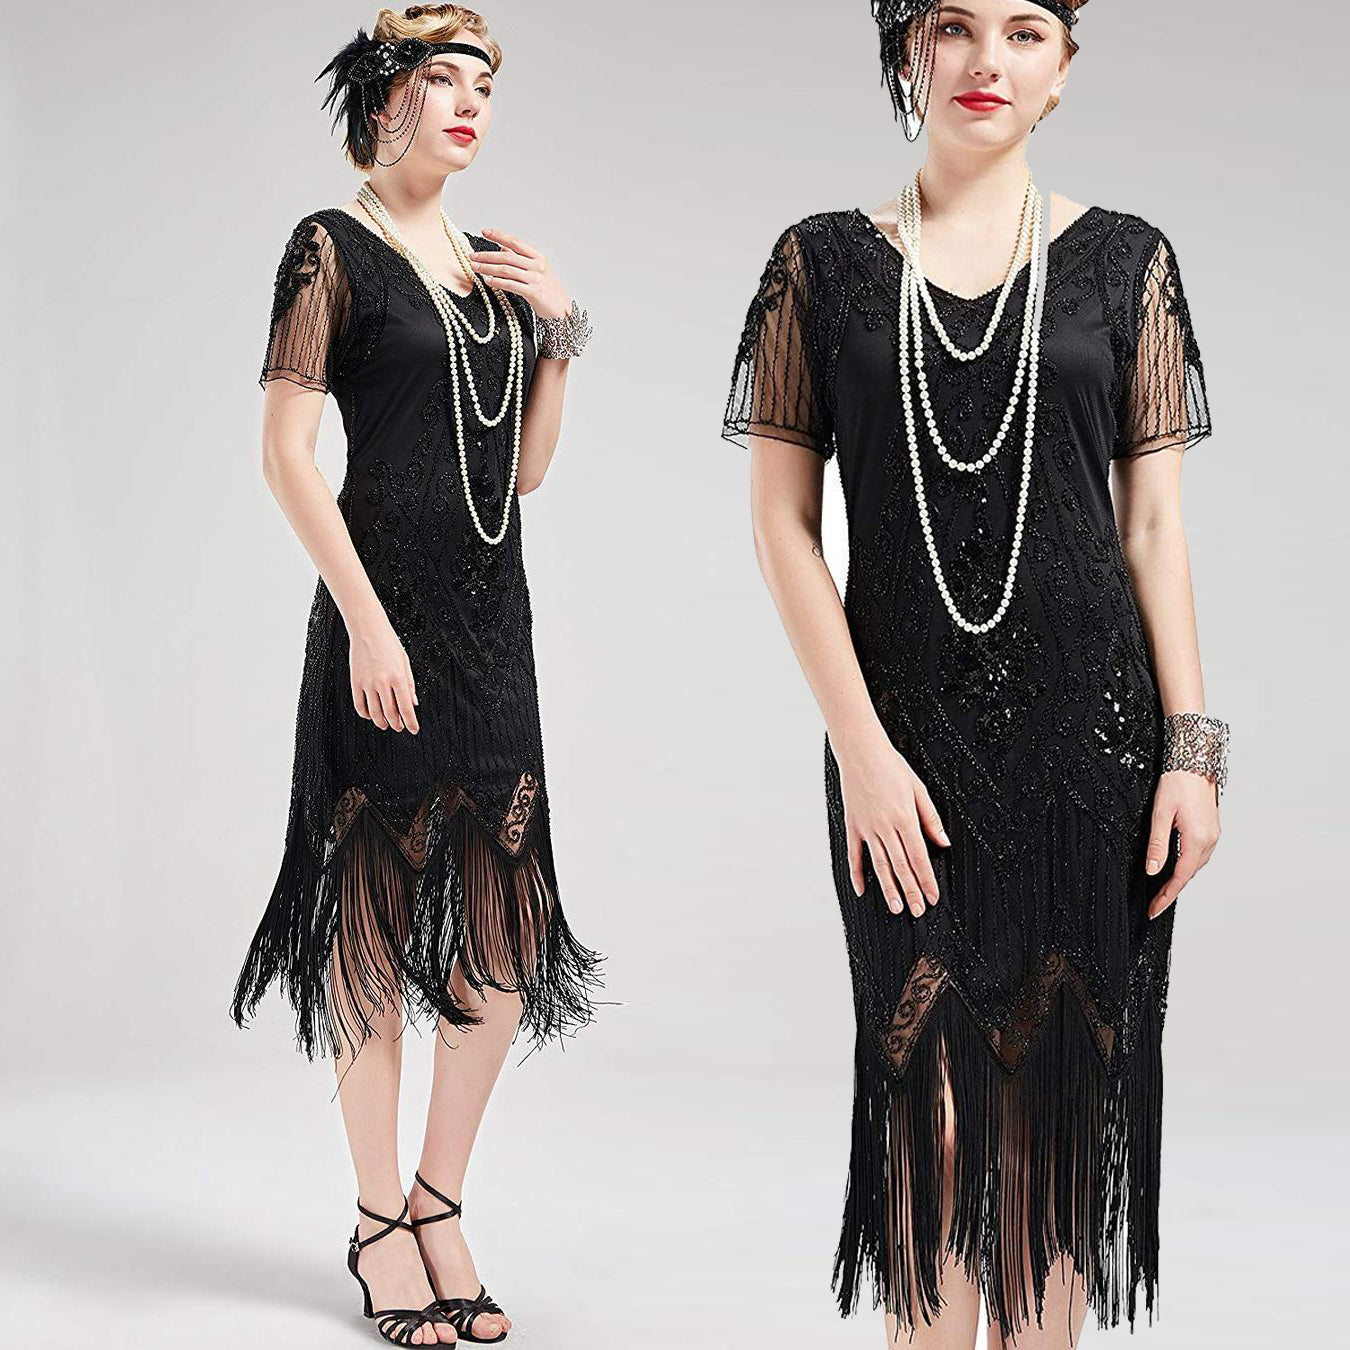 US STOCK Vintage Black 1920s Art Deco Unique Fringed Sequin Dress 20s Flapper Gatsby